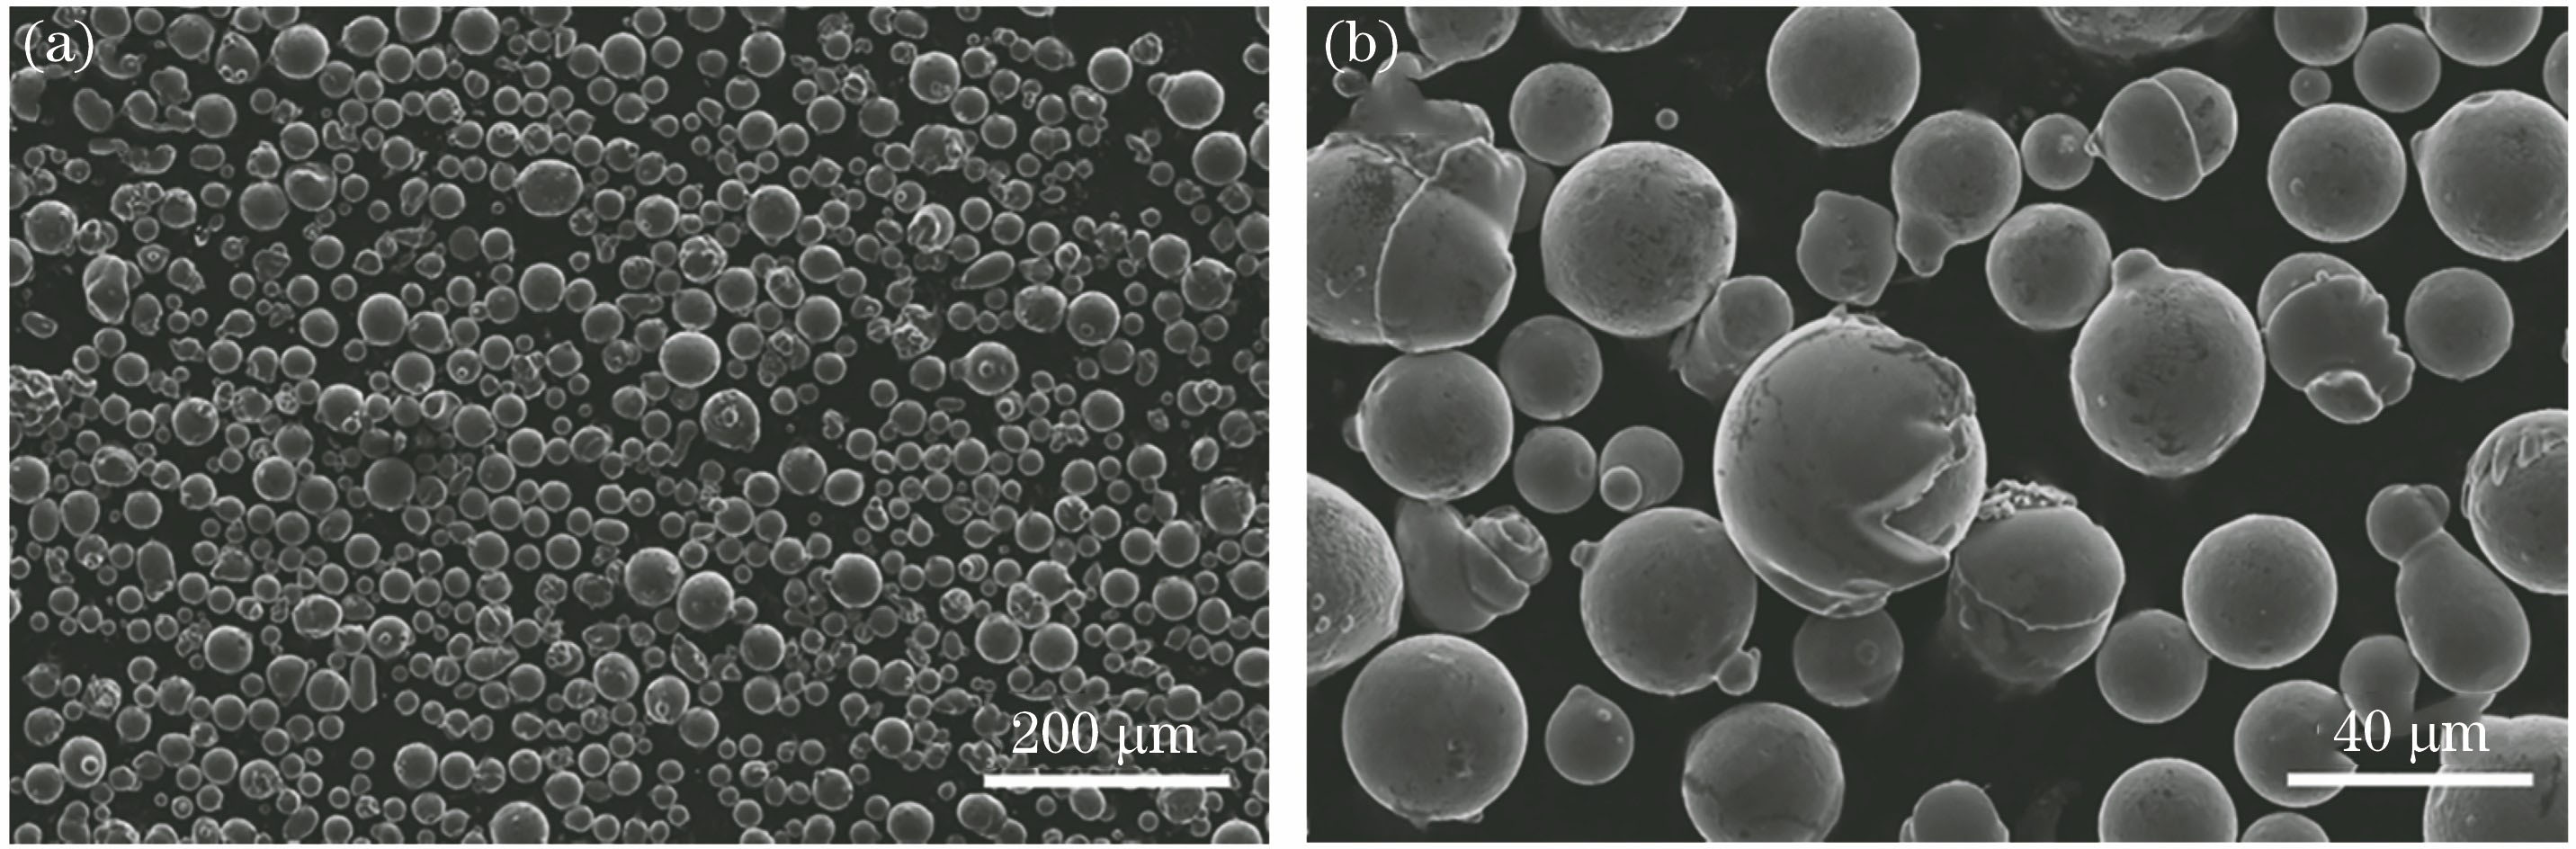 Cu-13.5Al-4Ni-0.5Ti alloy powders. (a) Microscopic morphology of powders; (b) surface morphology of particles